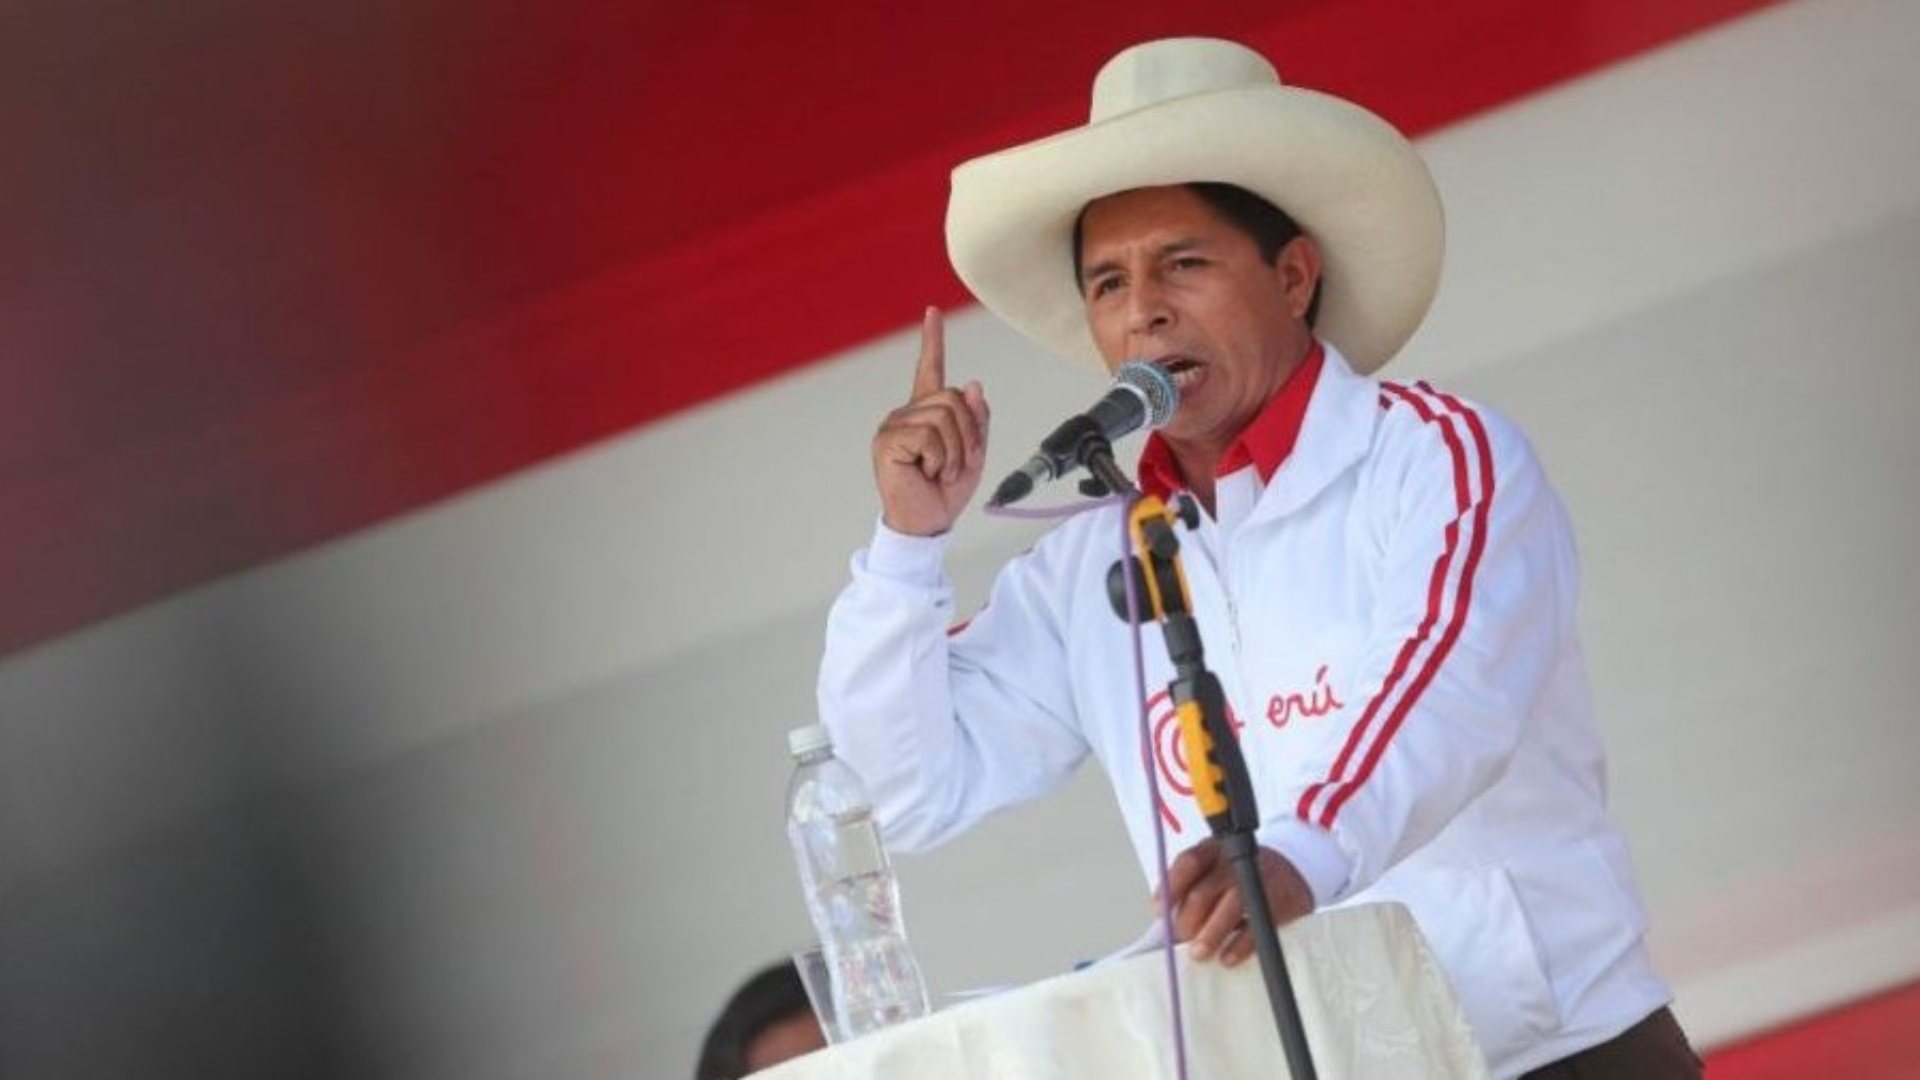 "Un maestro no ha venido a enlodarse en actos de corrupción”, asegura Pedro Castillo